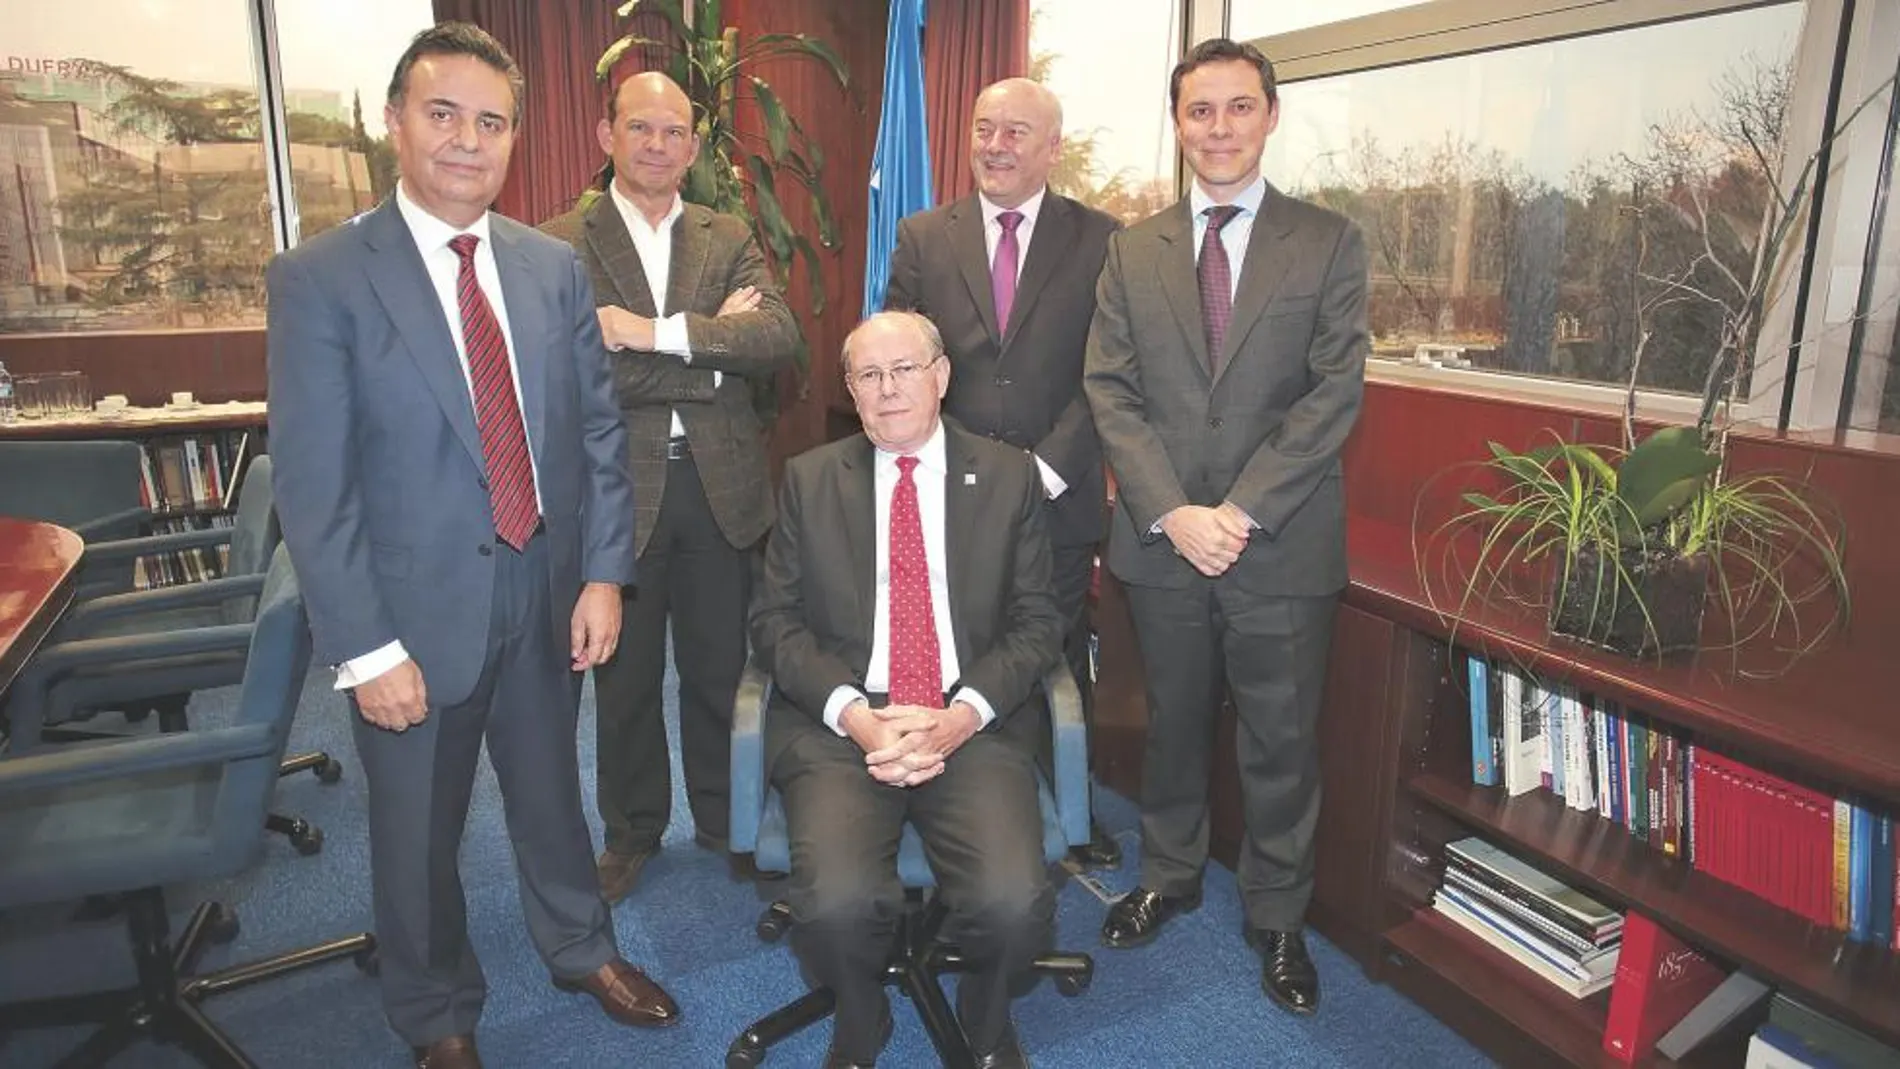 De izquerda a derecha, José Antonio Membiela, Carlos Glez. Gcia de la Barga, Christopher George, Manuel Navarro y Rafael Pérez Feito